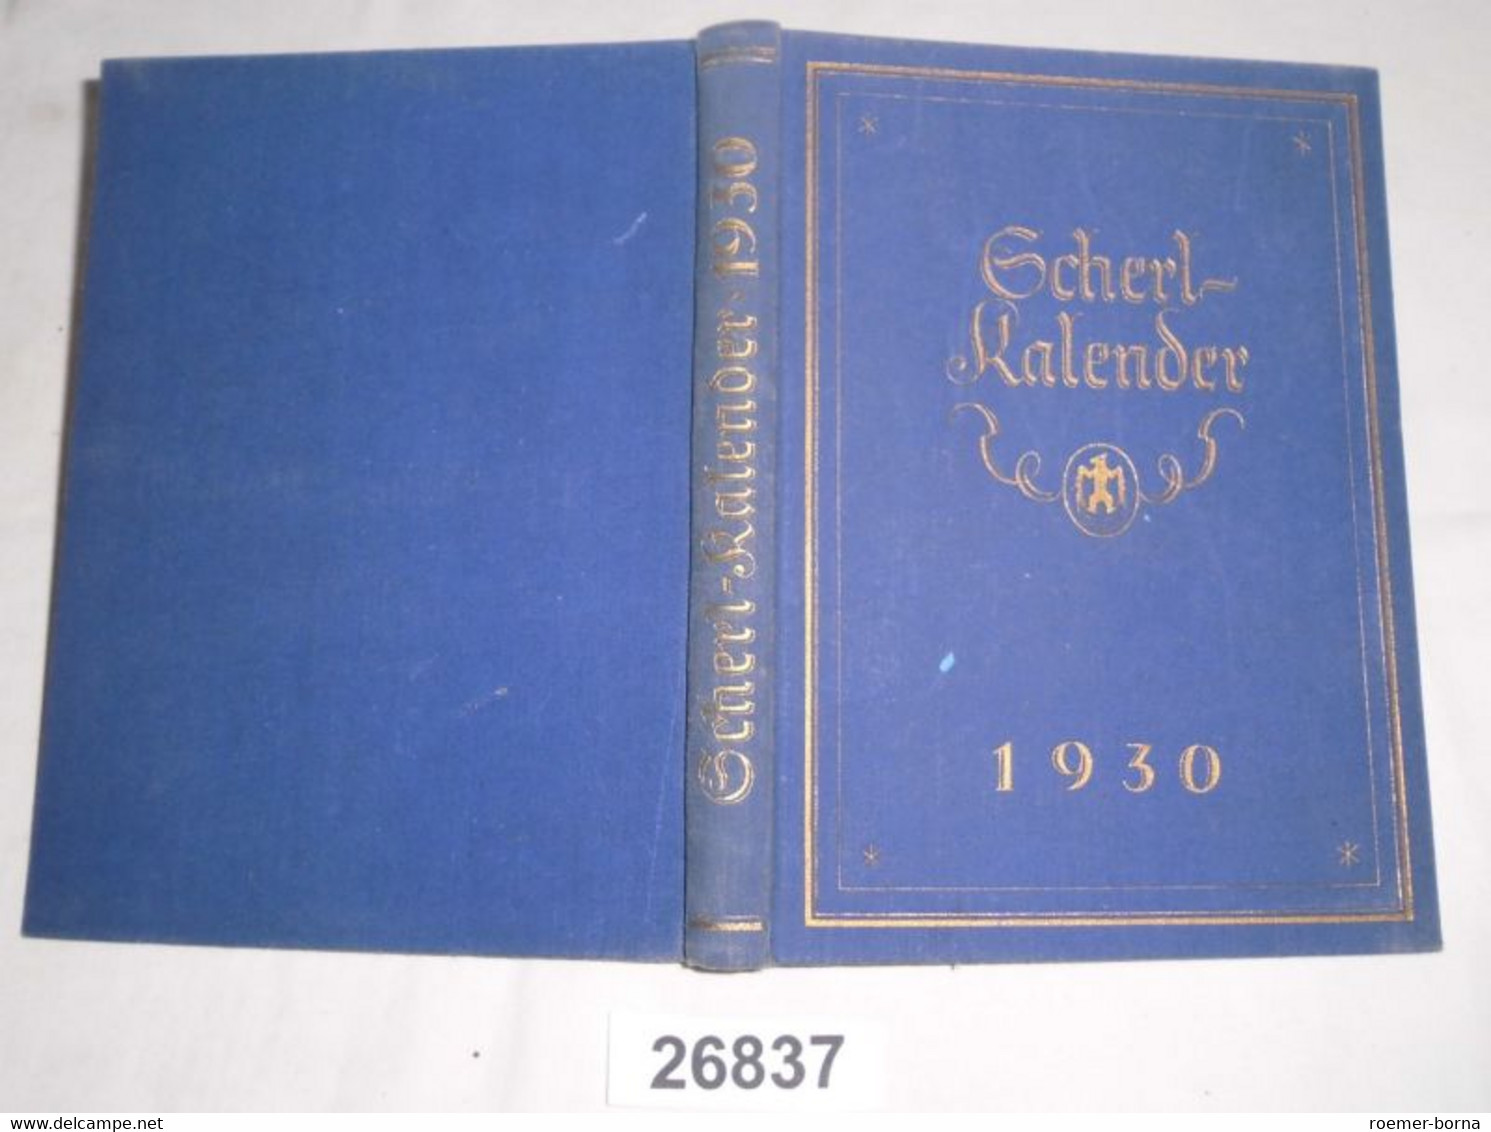 Scherl-Kalender 1930 - Calendriers